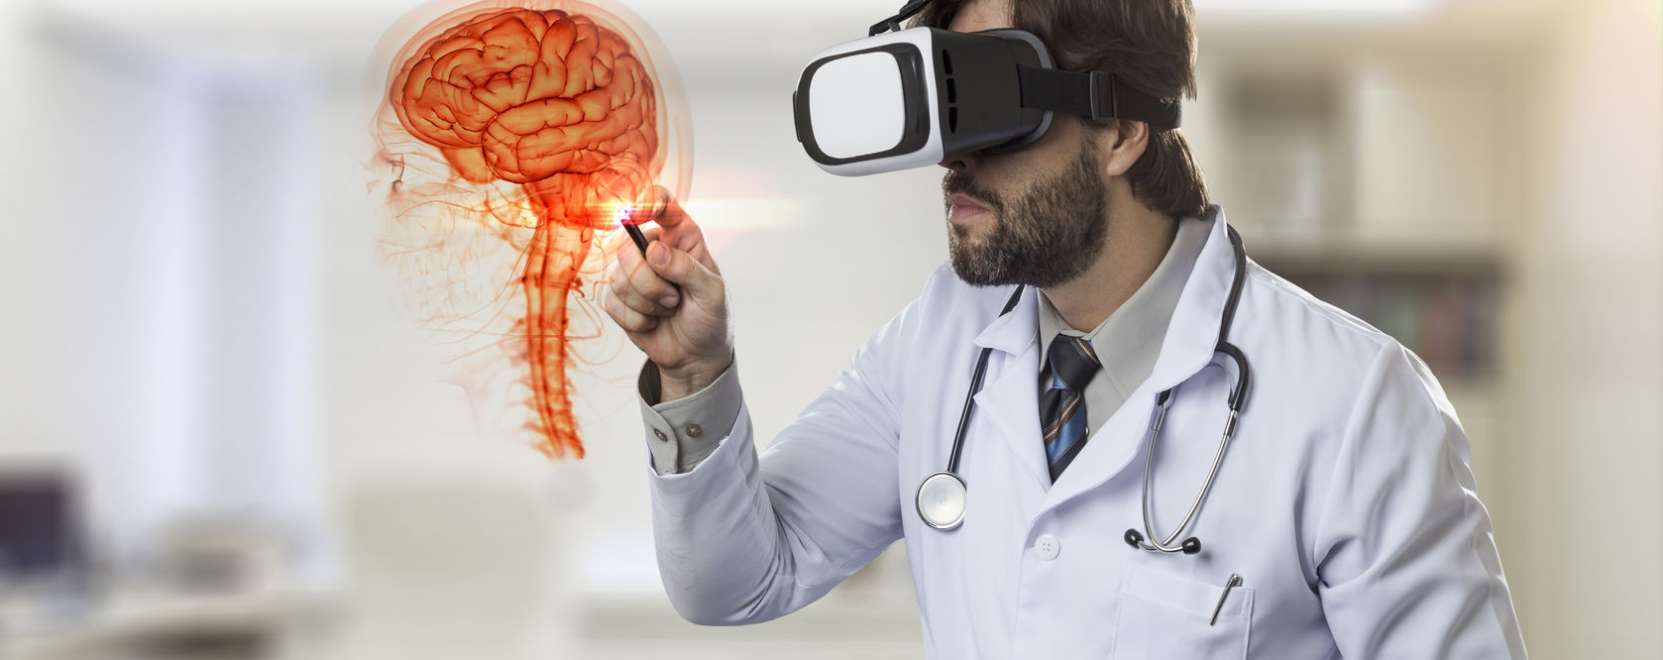 Terápiáknál is hasznos lehet a VR-szemüveg